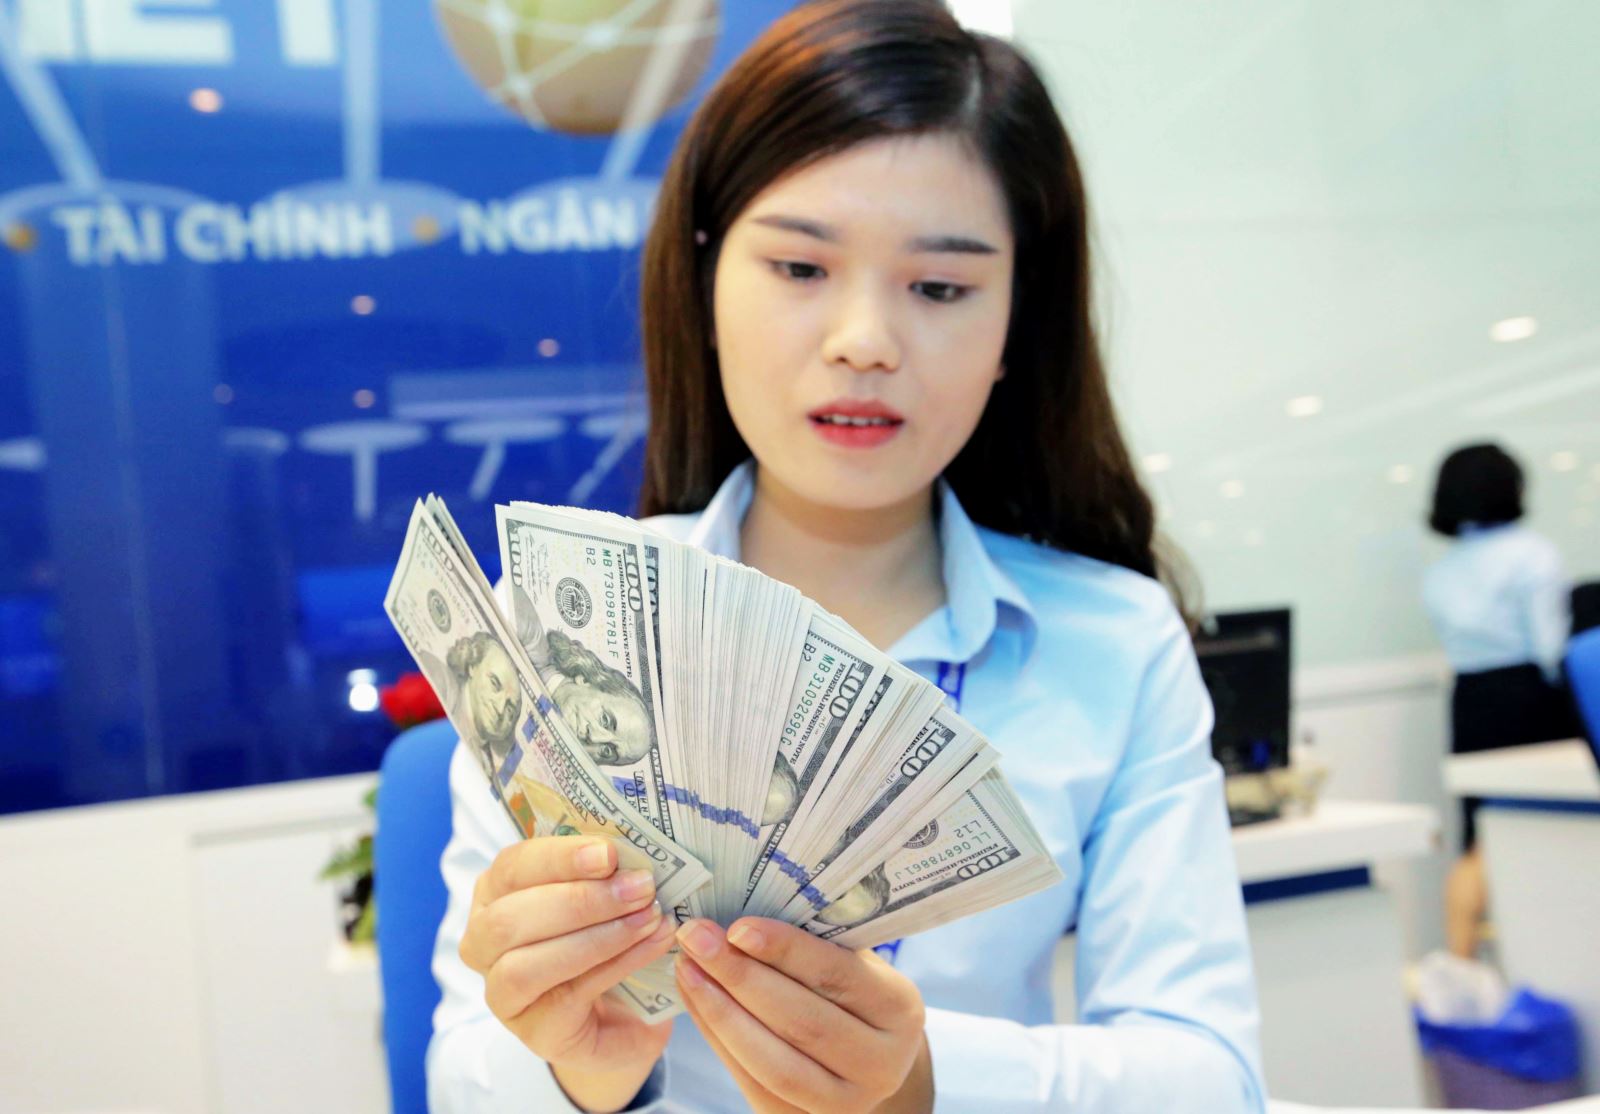 Tỷ giá trần mà các ngân hàng áp dụng hôm nay là 23.824 VND/USD và tỷ giá sàn là 22.436 VND/USD. Ảnh minh họa: Trần Việt/TTXVN